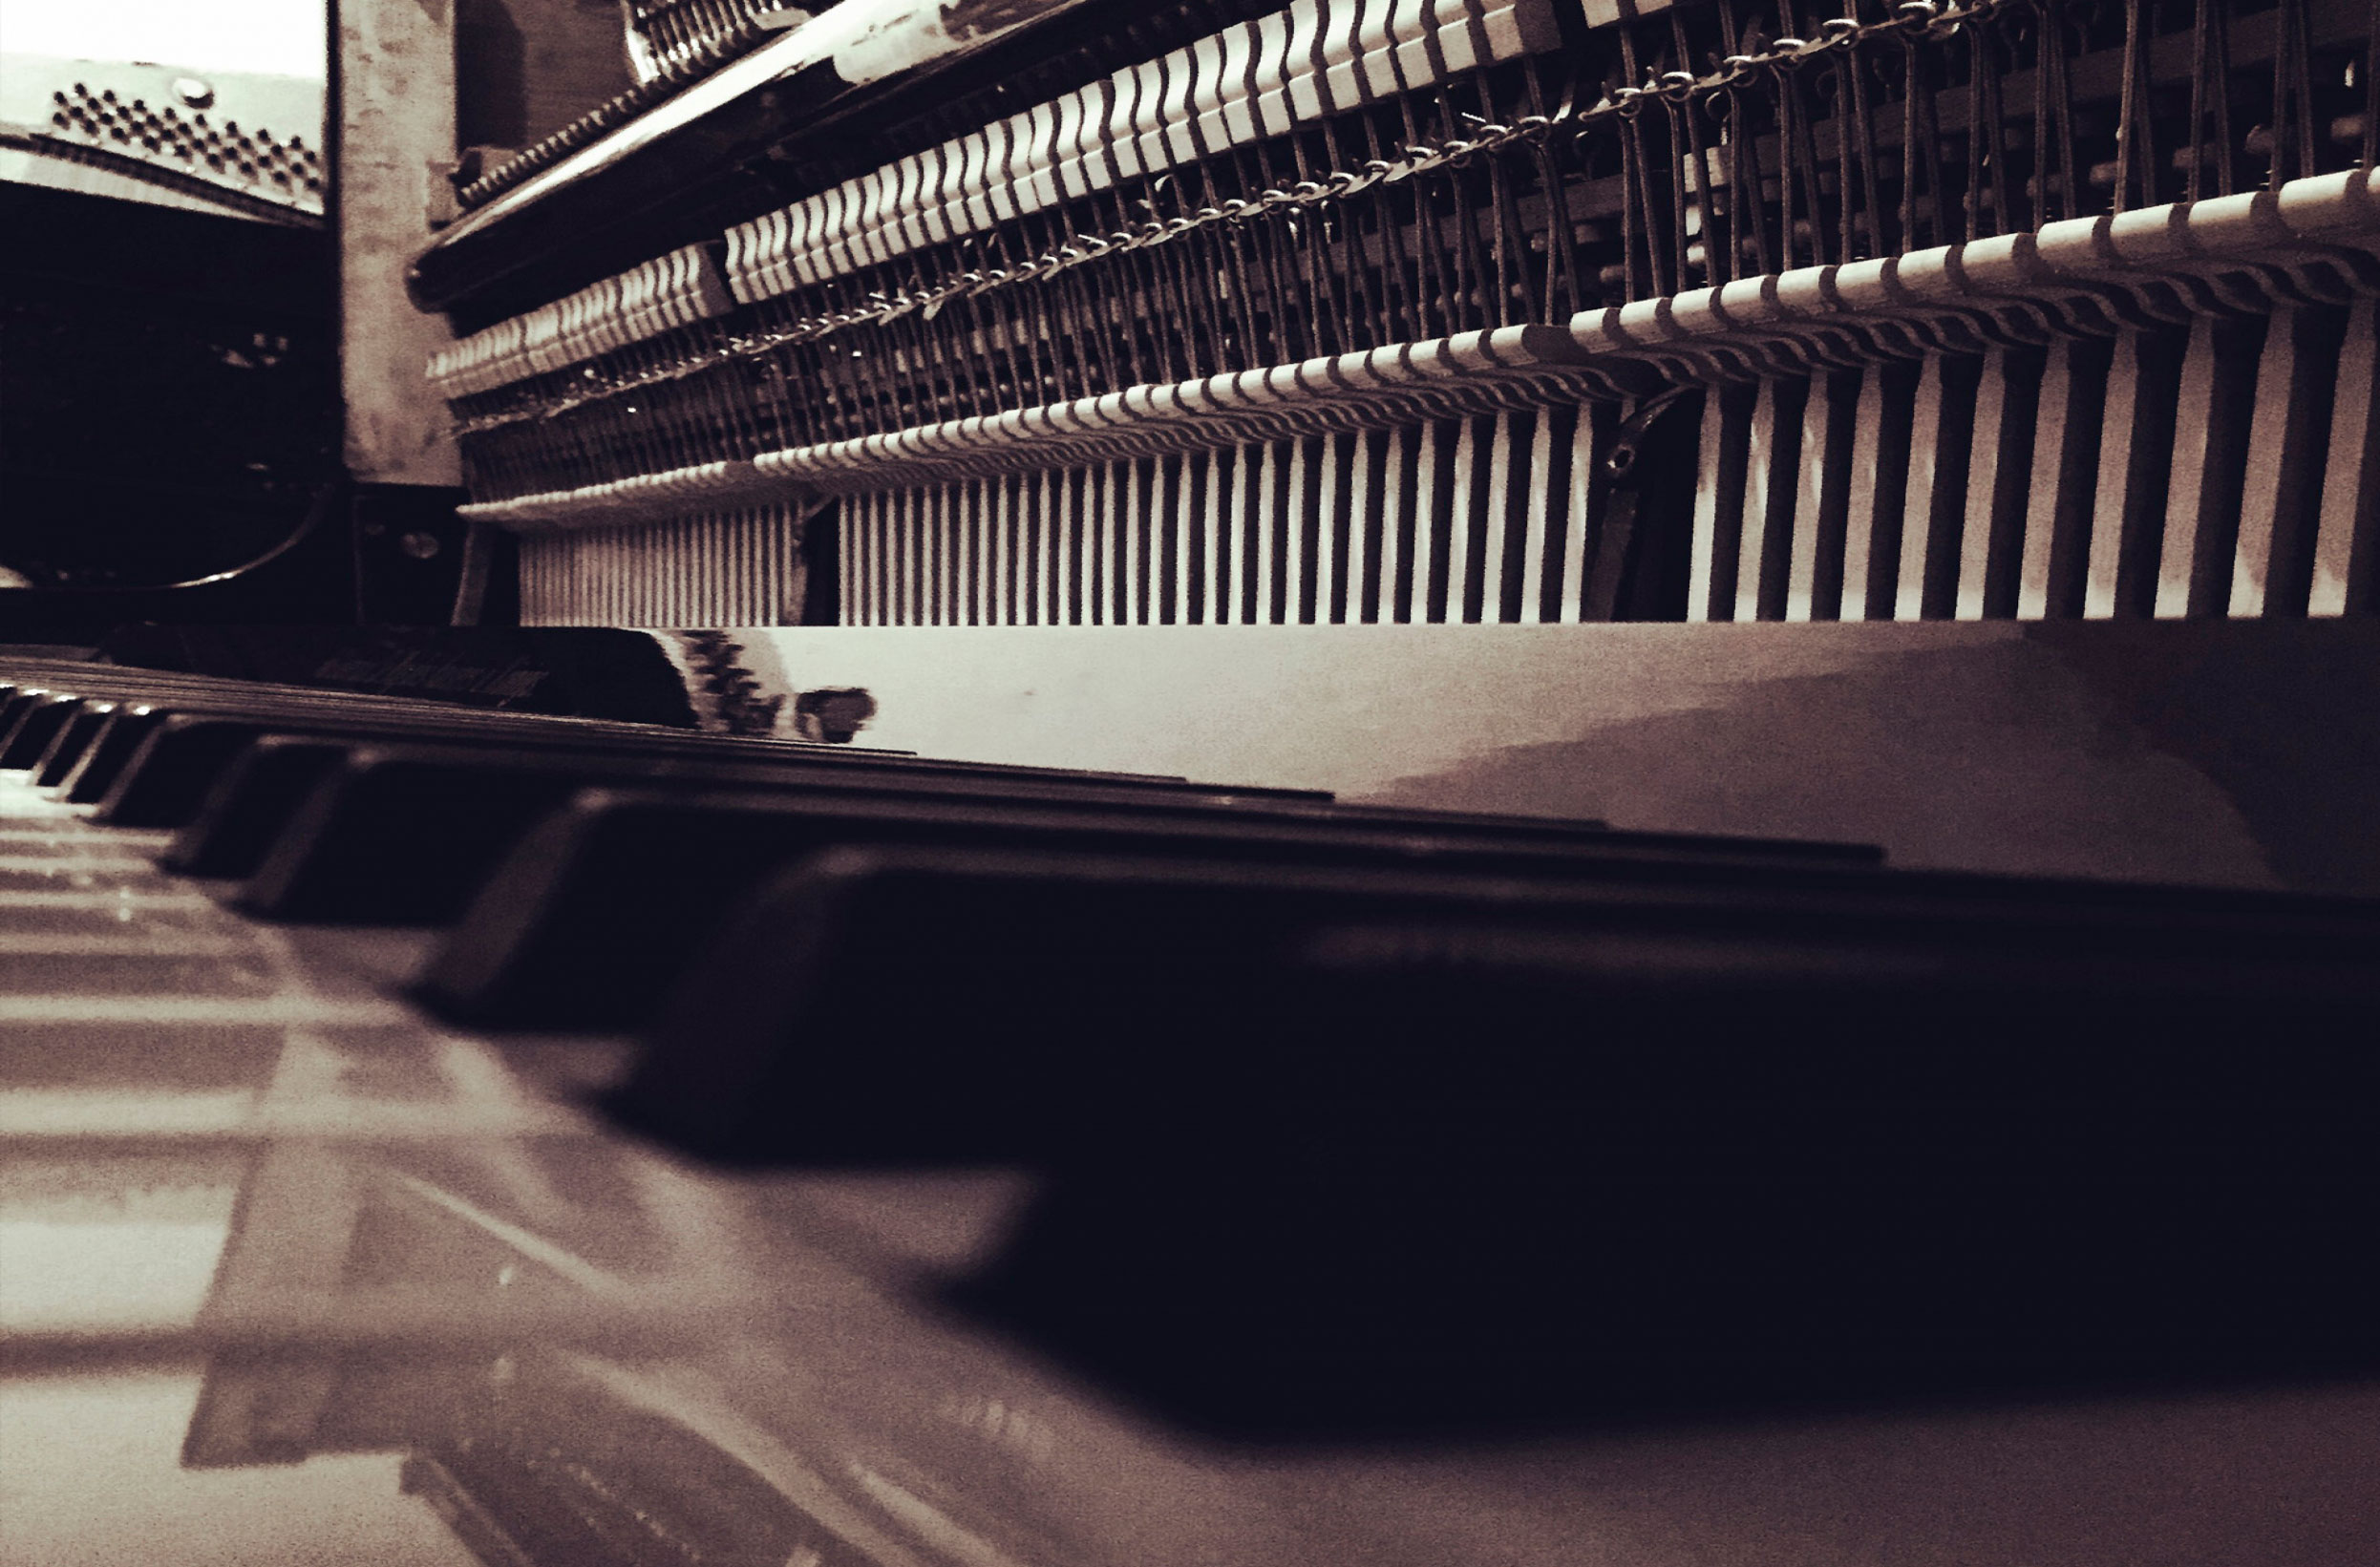 Reparación y restauración de pianos